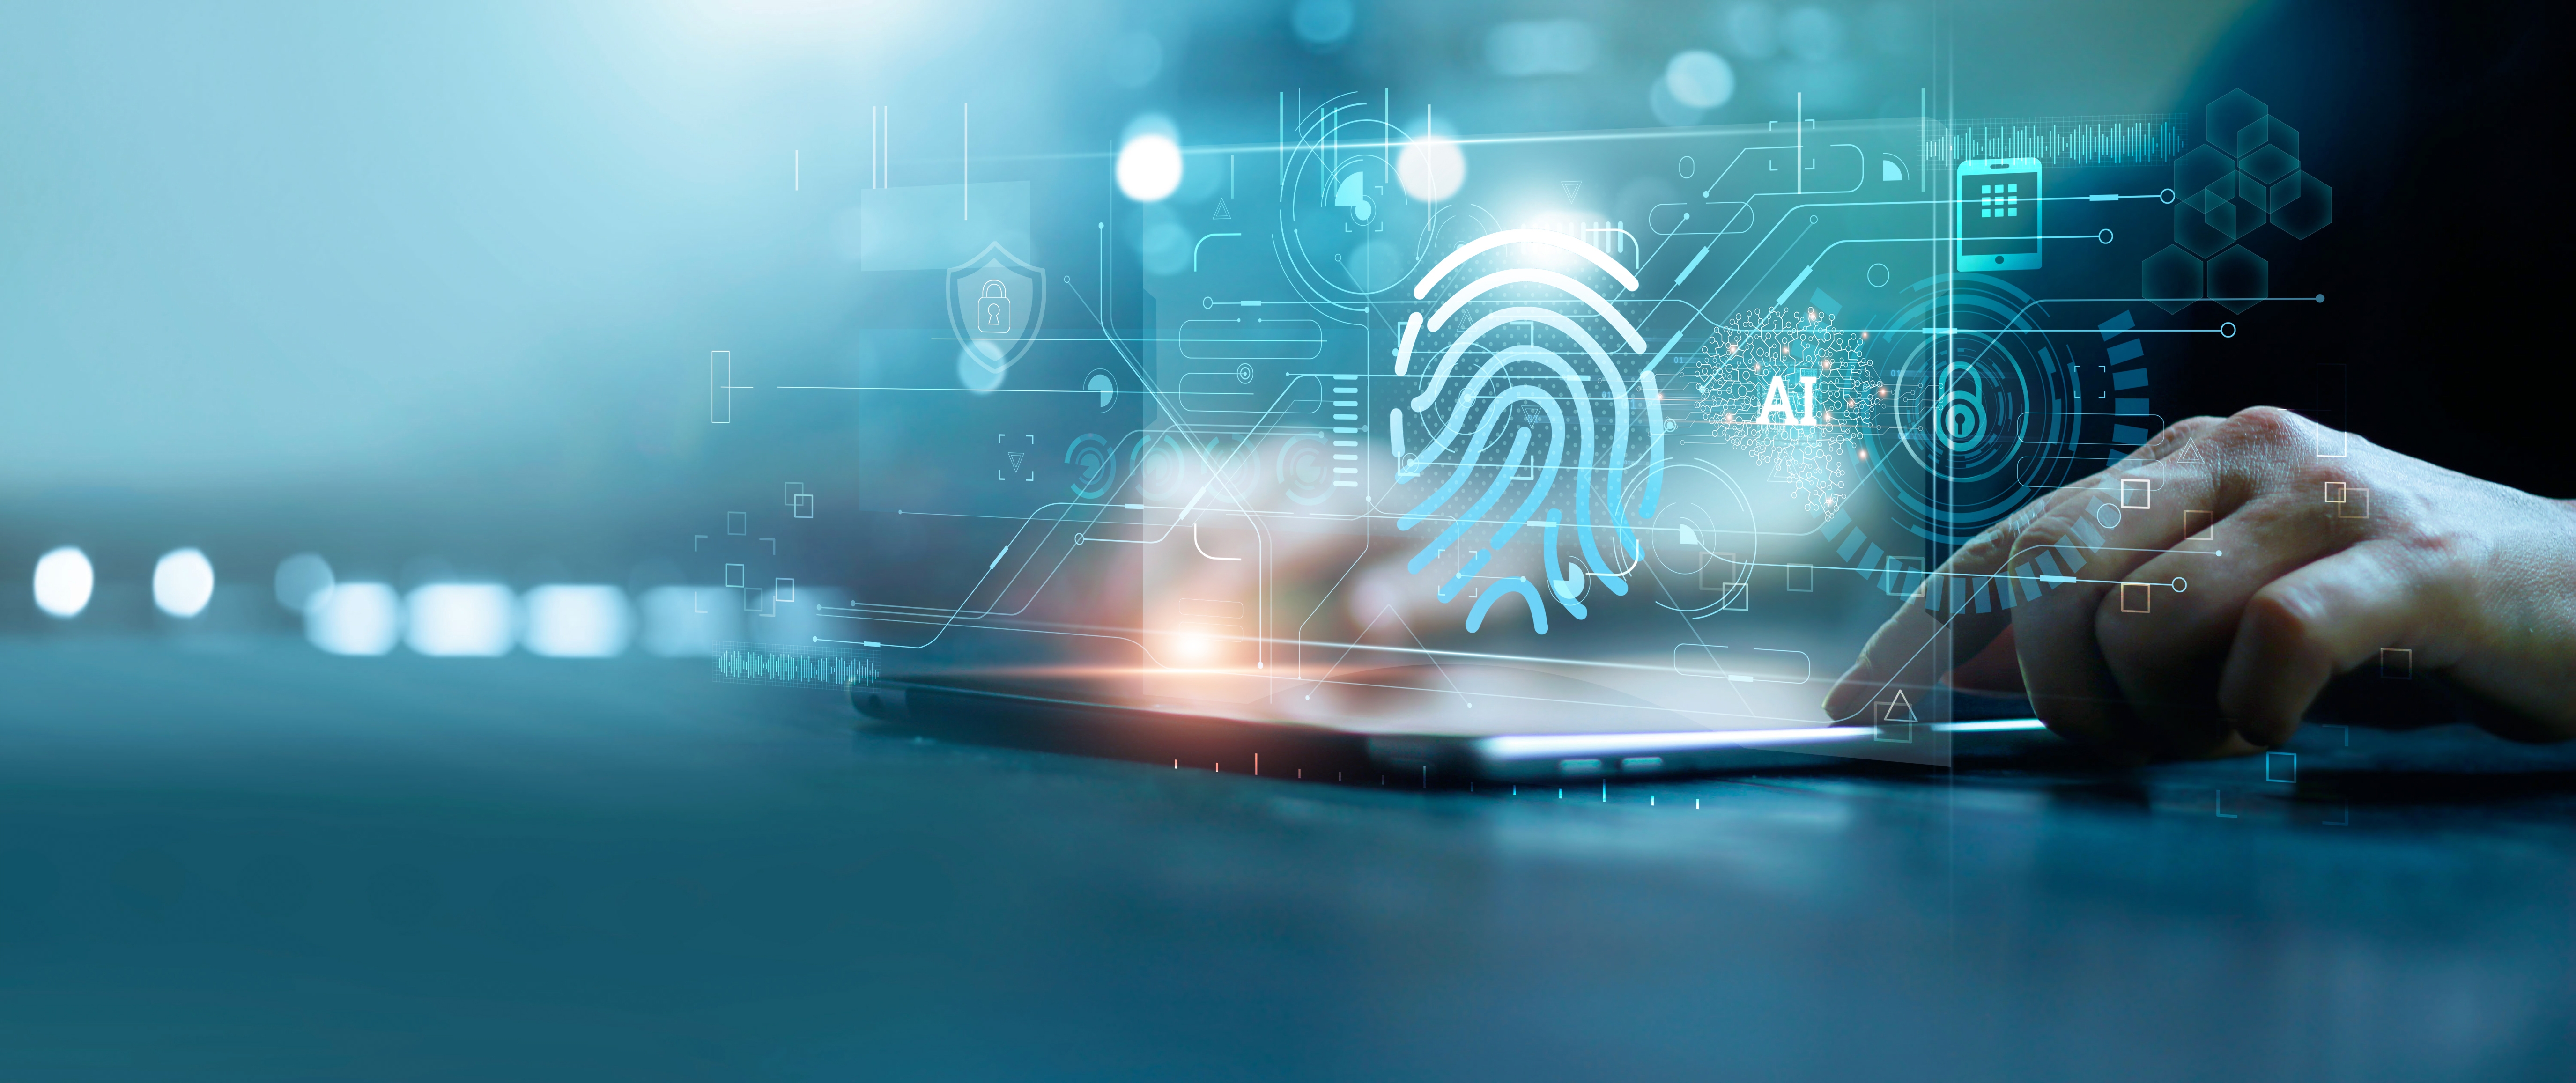 Surecomp und Pelican AI verkünden Partnerschaft zur Verbesserung des digitalen Handelsrisikos und der Compliance